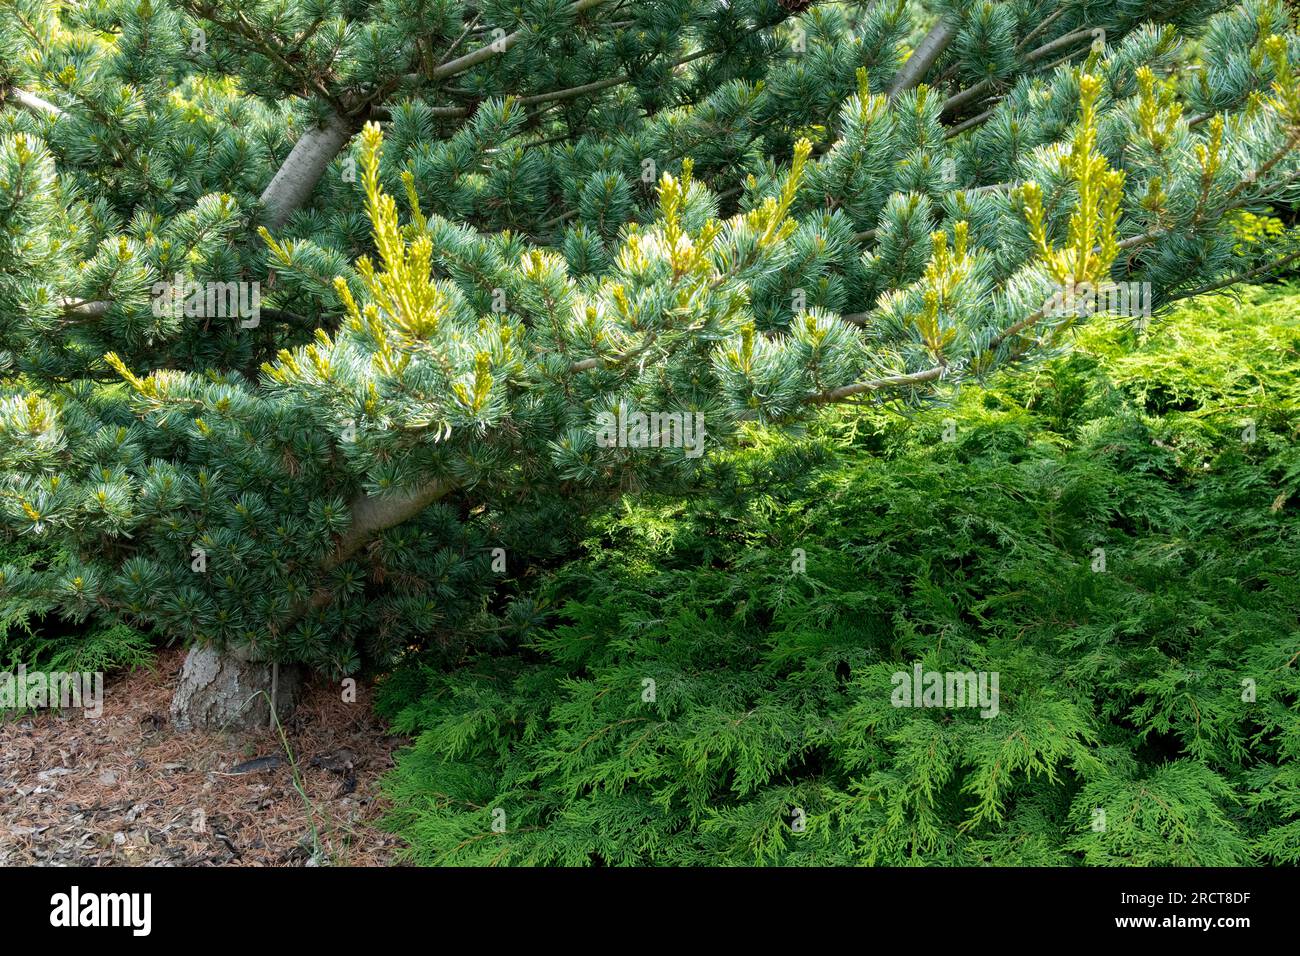 Japanese White Pine, Tree, Pinus parviflora 'Shikoku' Stock Photo